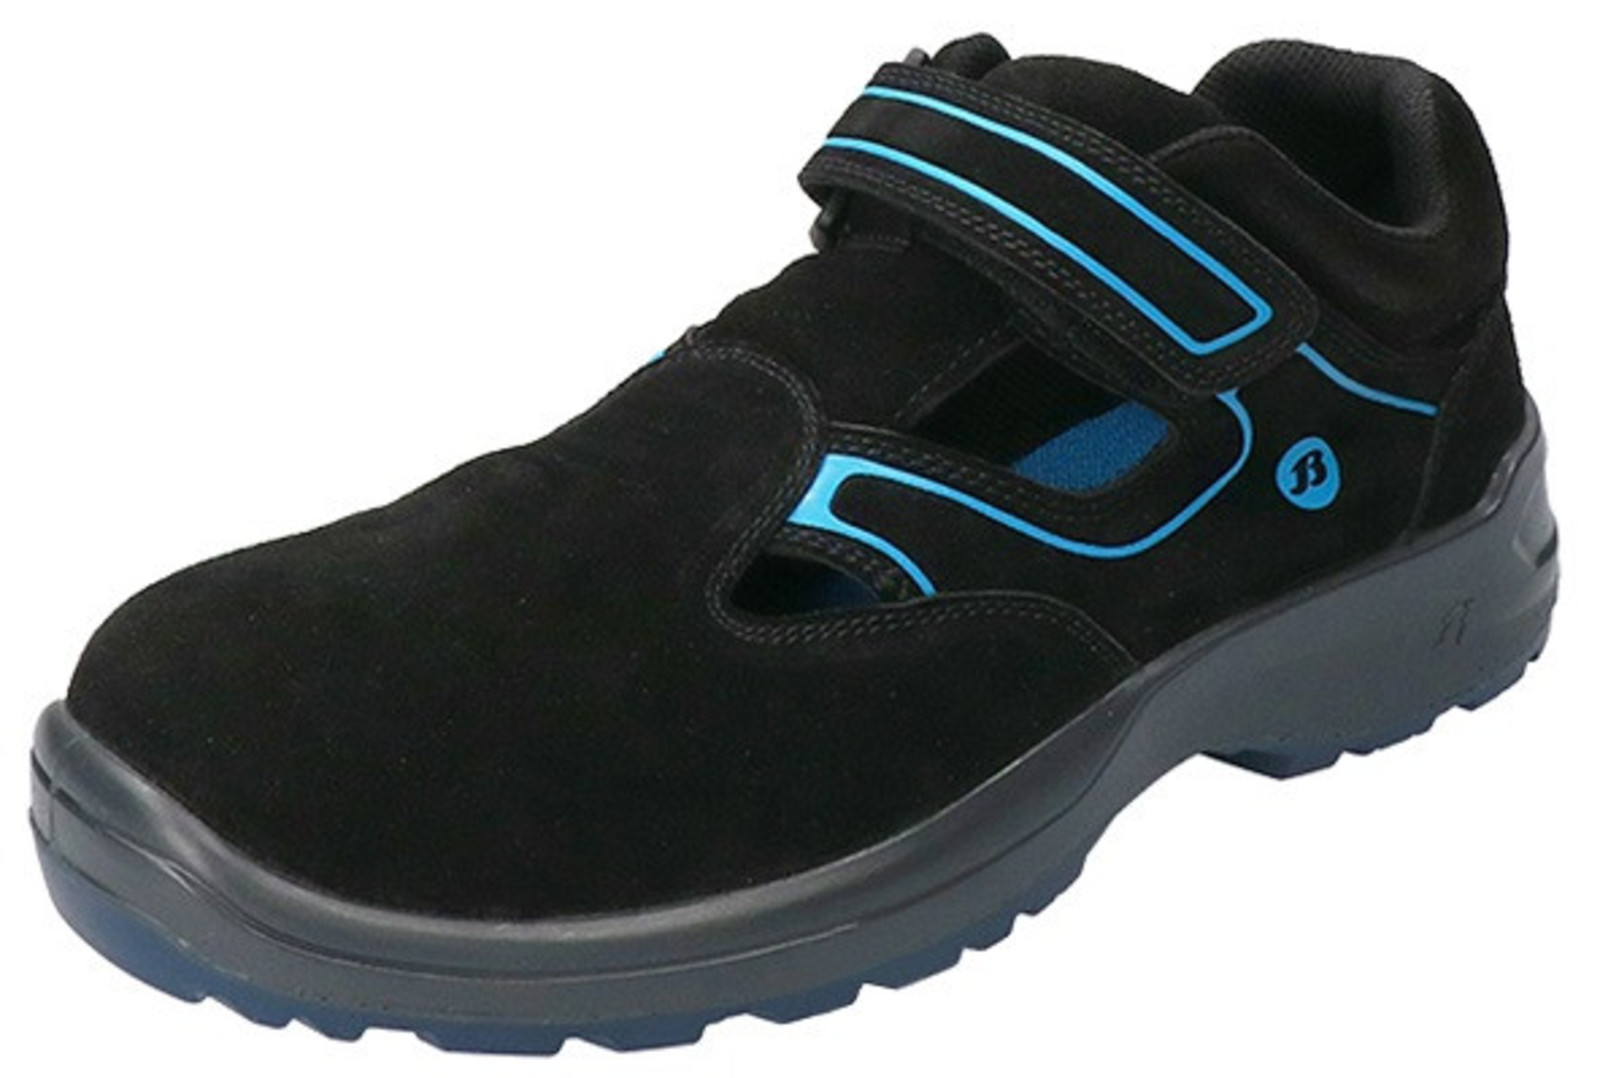 Bezpečnostné sandále Baťa Falcon ESD S1 - veľkosť: 36, farba: čierna